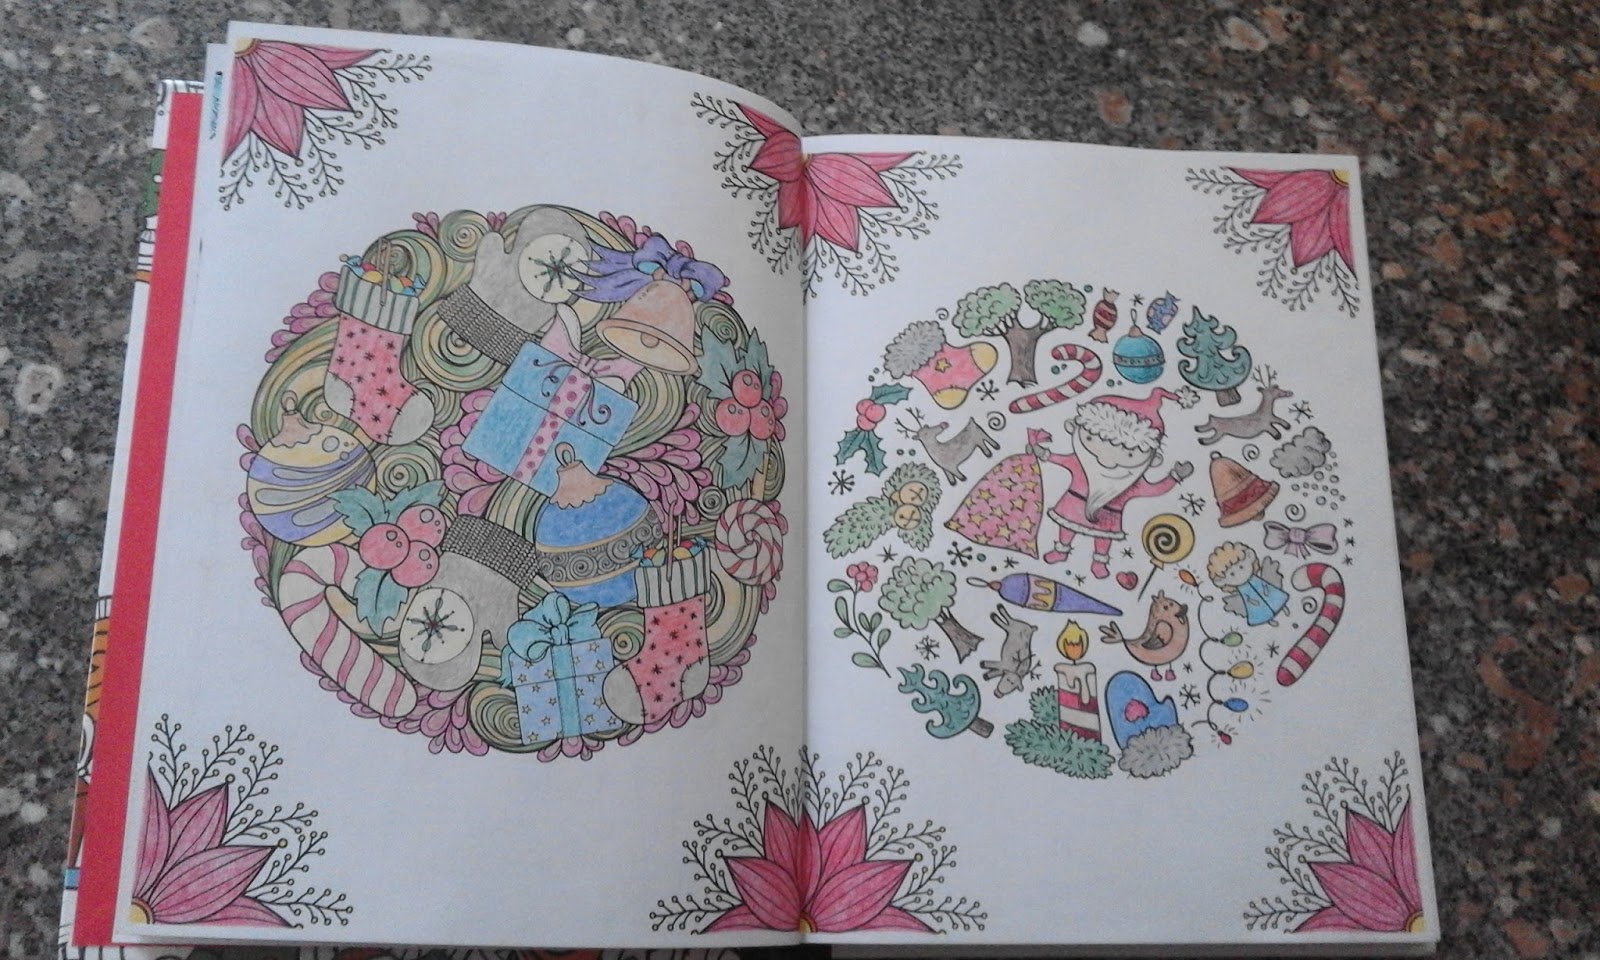 Mandalas e outros Desenhos de Natal para Colorir de Antonio F. Rodriguéz  Esteban - Livro - WOOK